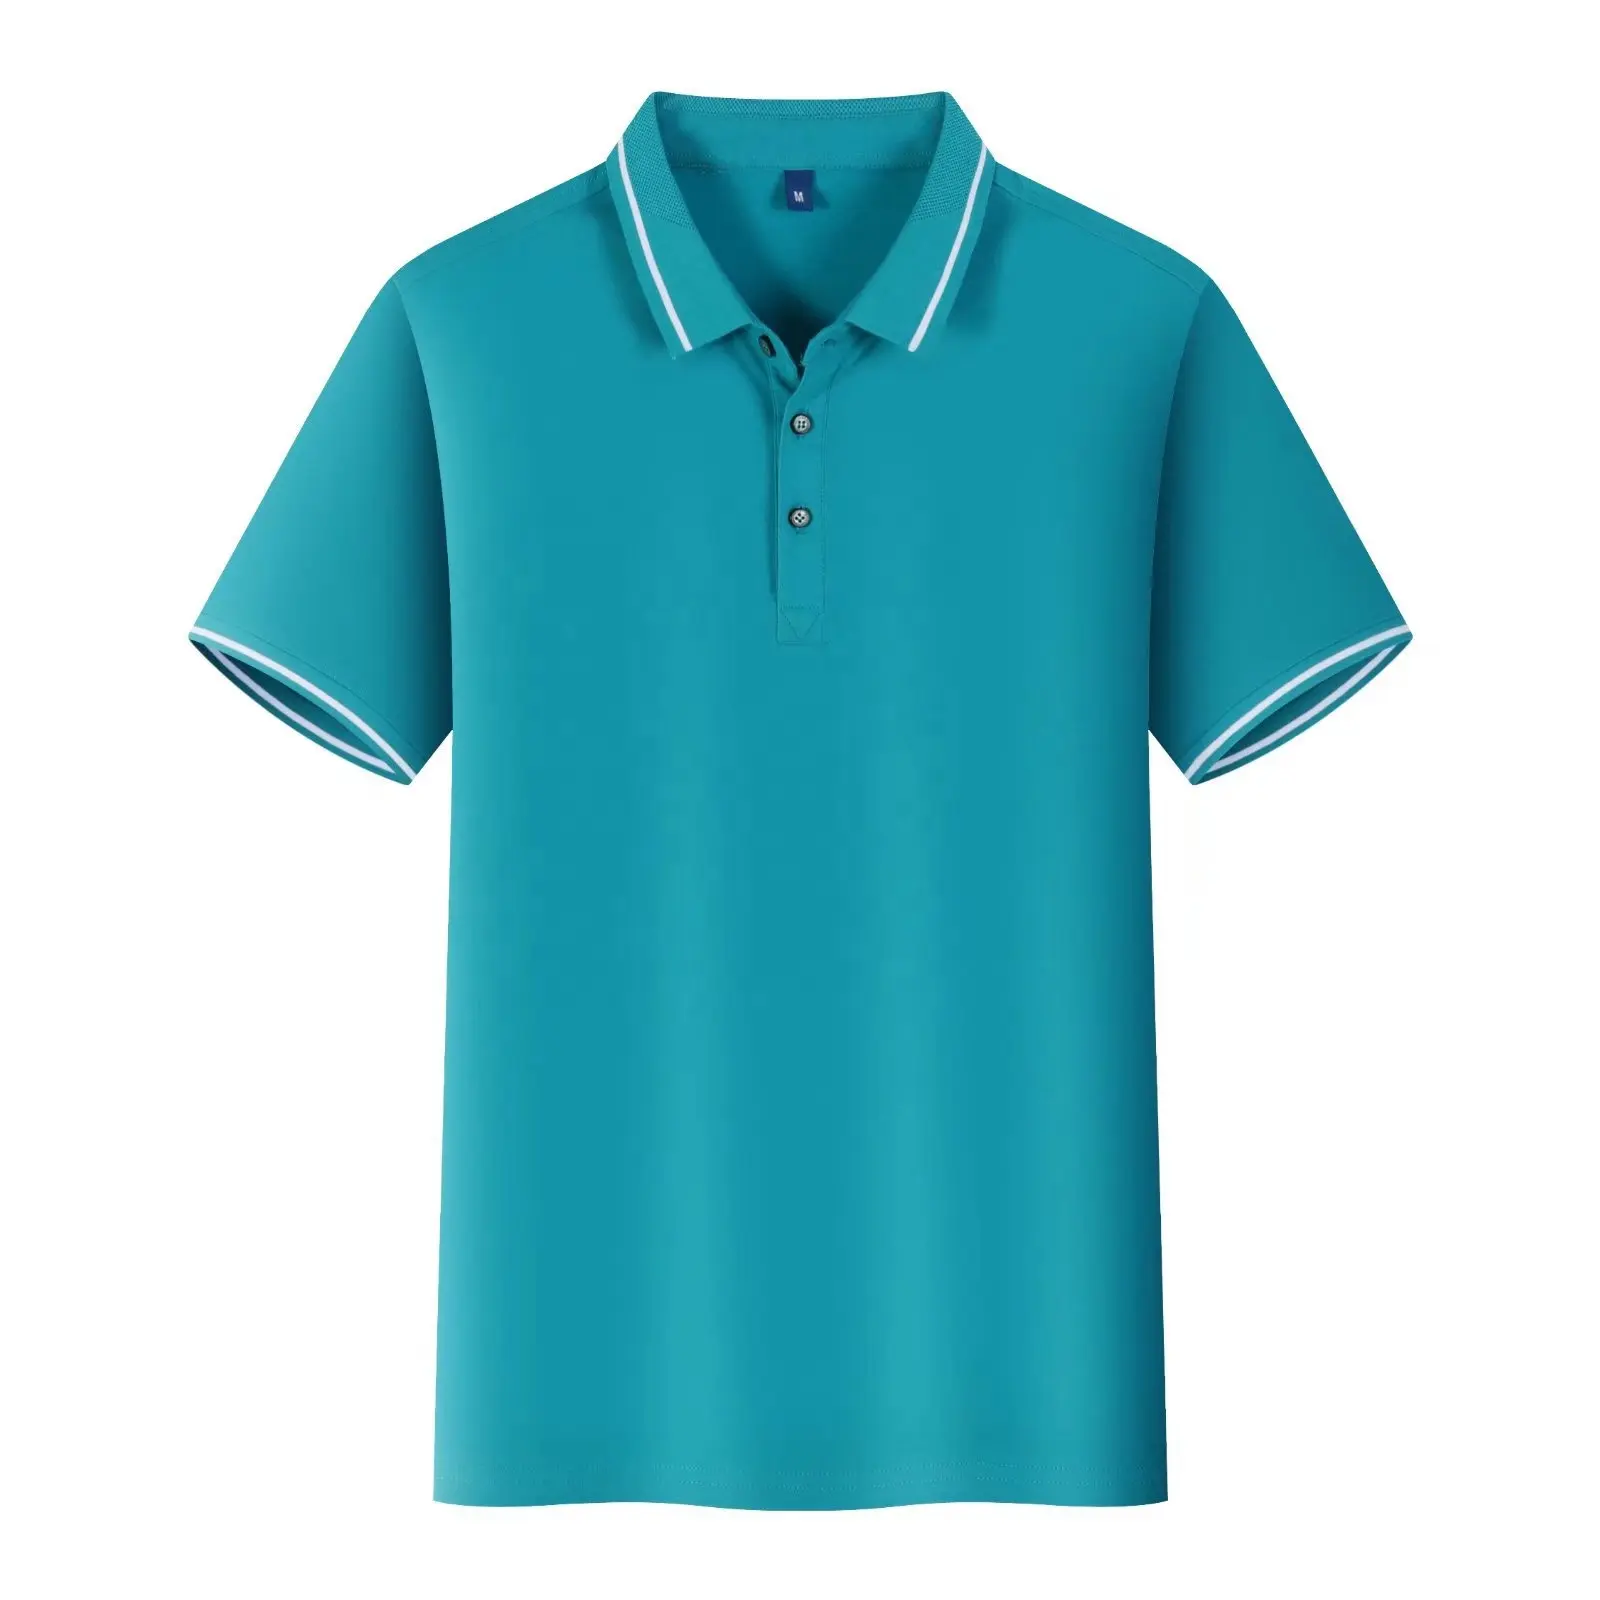 OEM 100% pamuk golf polo gömlek özel logo yüksek kalite casual erkekler polo t shirt slim fit kadın t shirt erkek kız